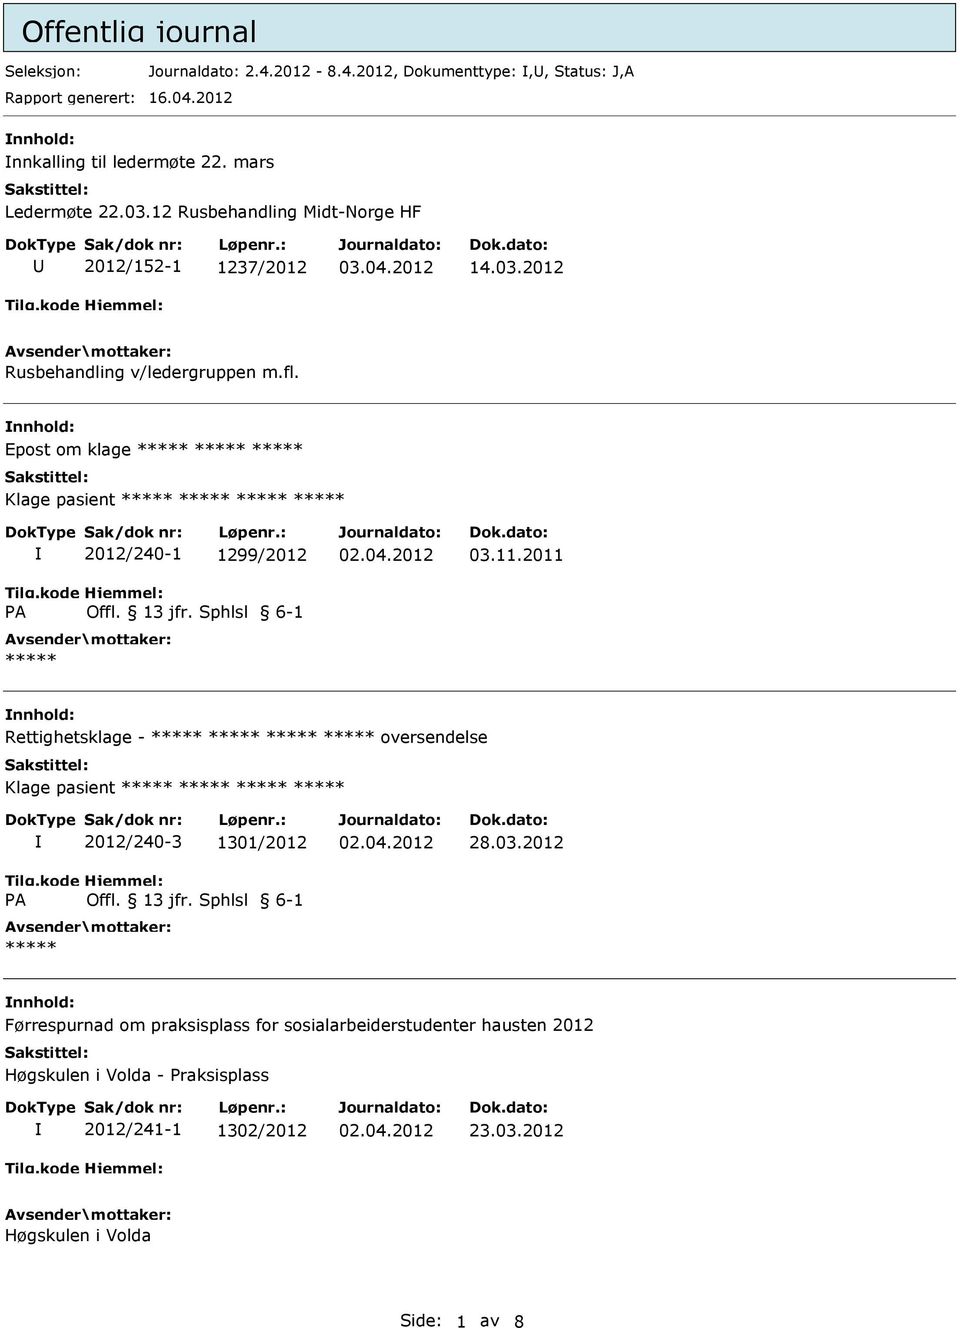 Epost om klage Klage pasient PA 2012/240-1 1299/2012 Offl. 13 jfr. Sphlsl 6-1 03.11.